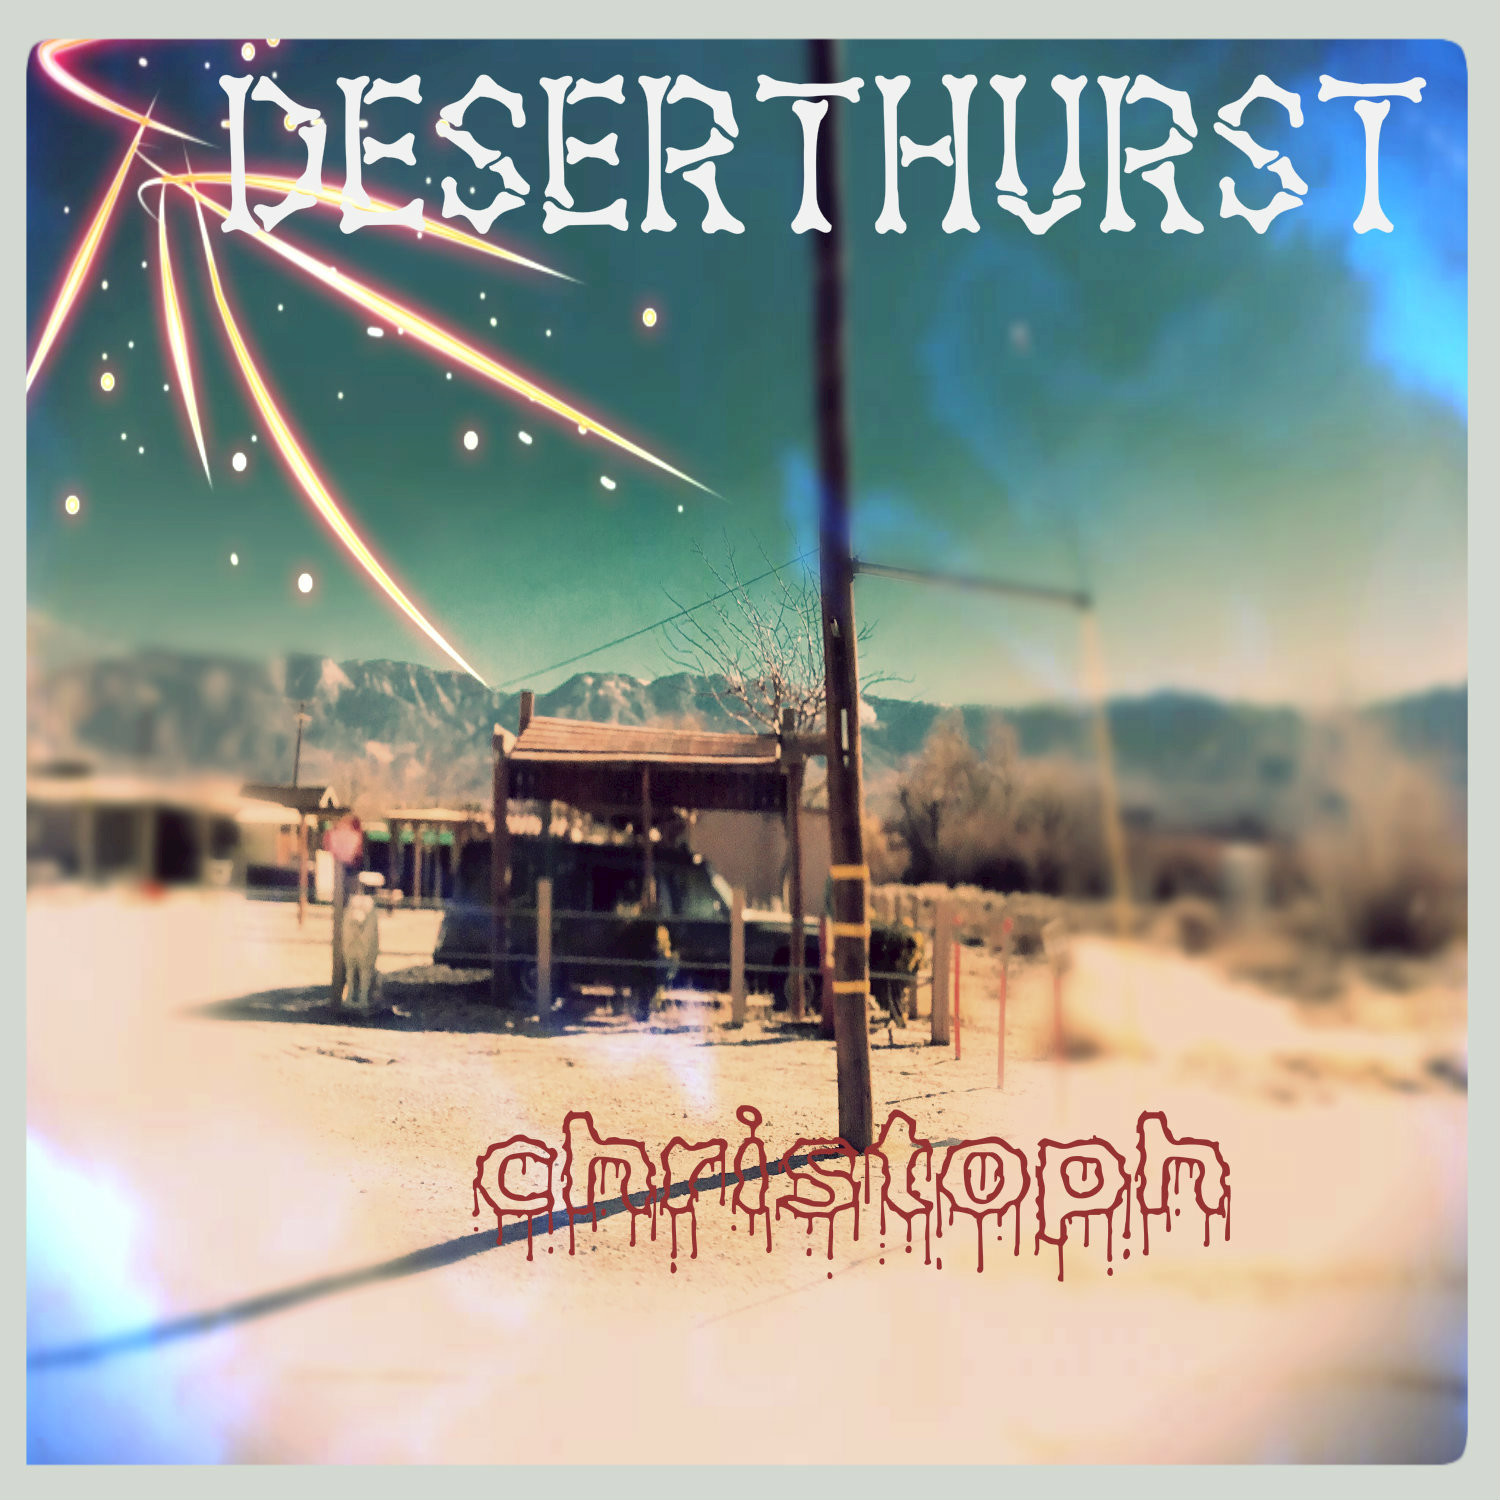 Desert Hurst